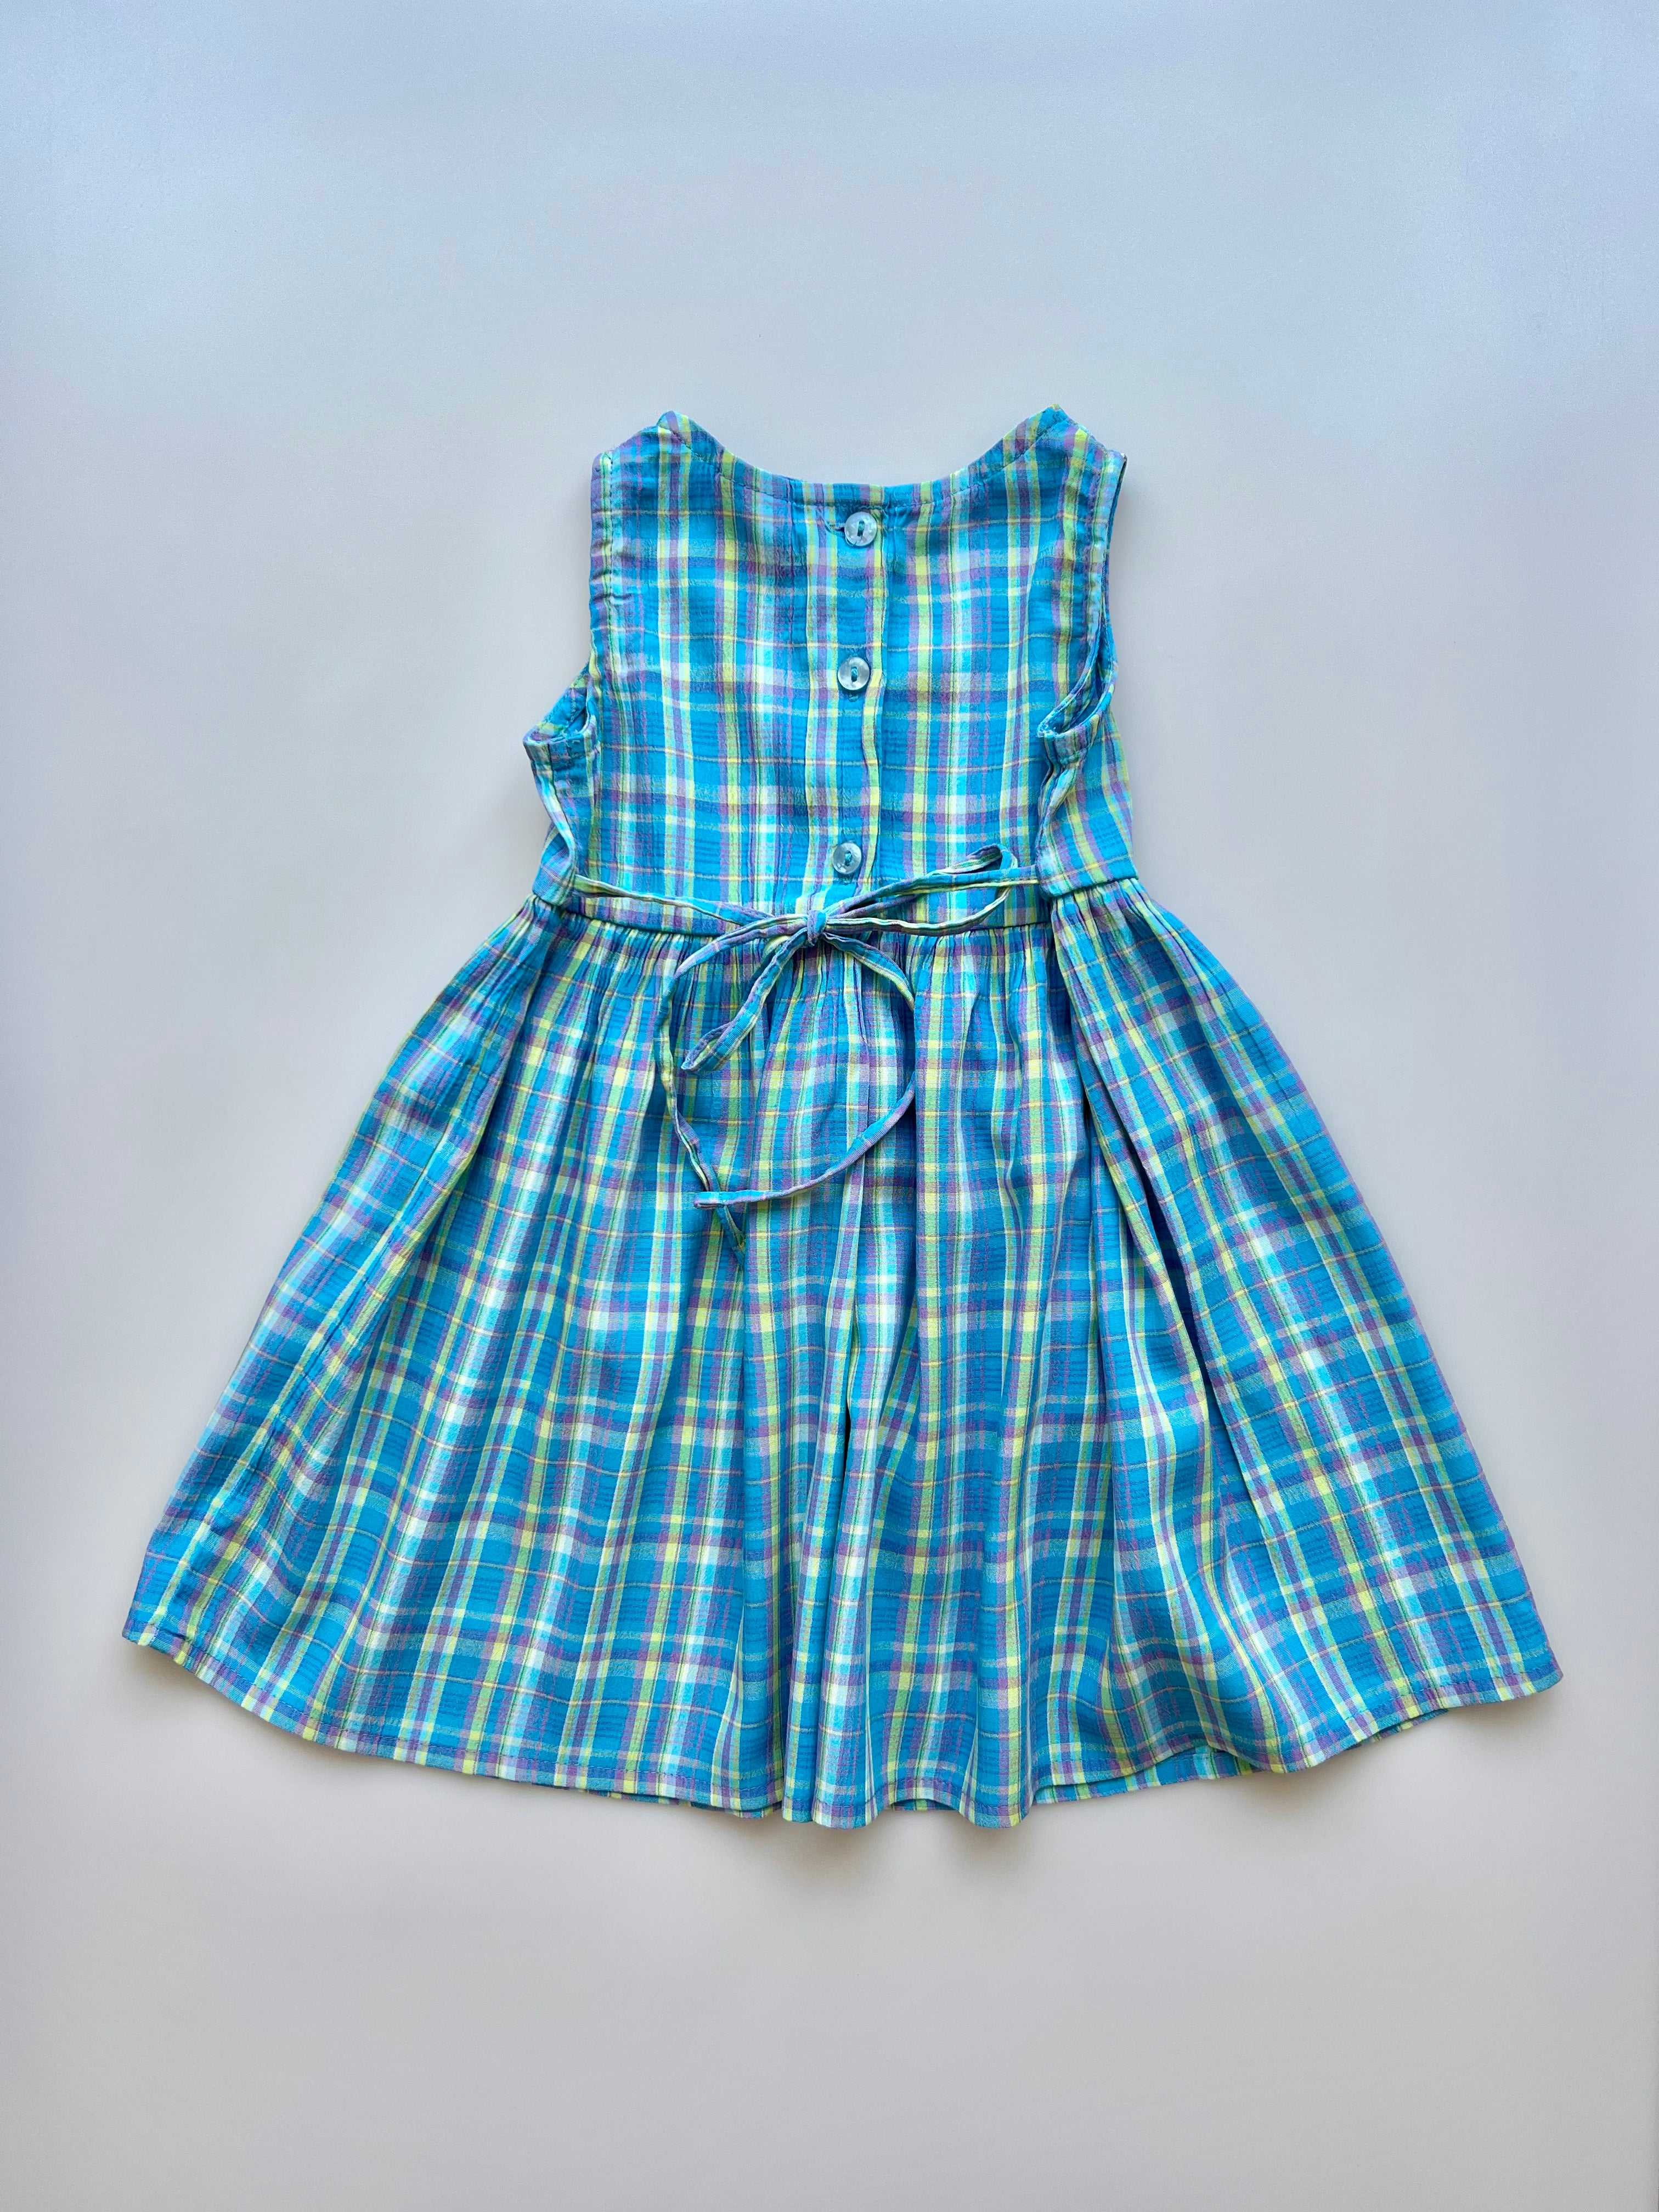 Vintage Blue Gingham Dress 12-18 Months